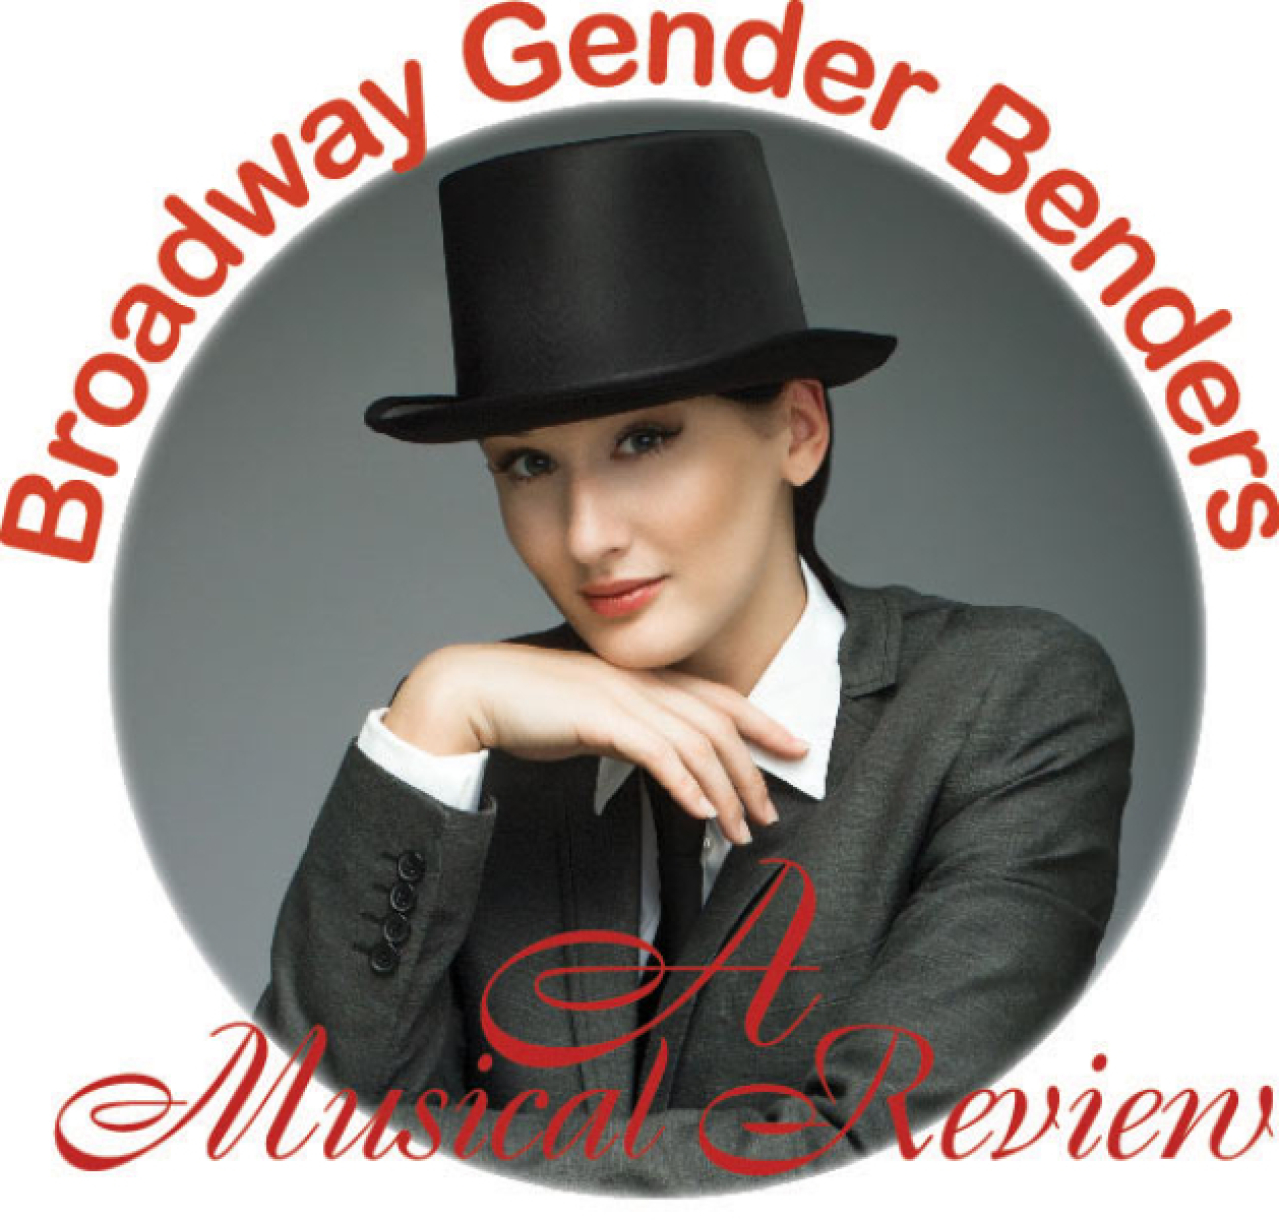 broadway gender benders logo 87179